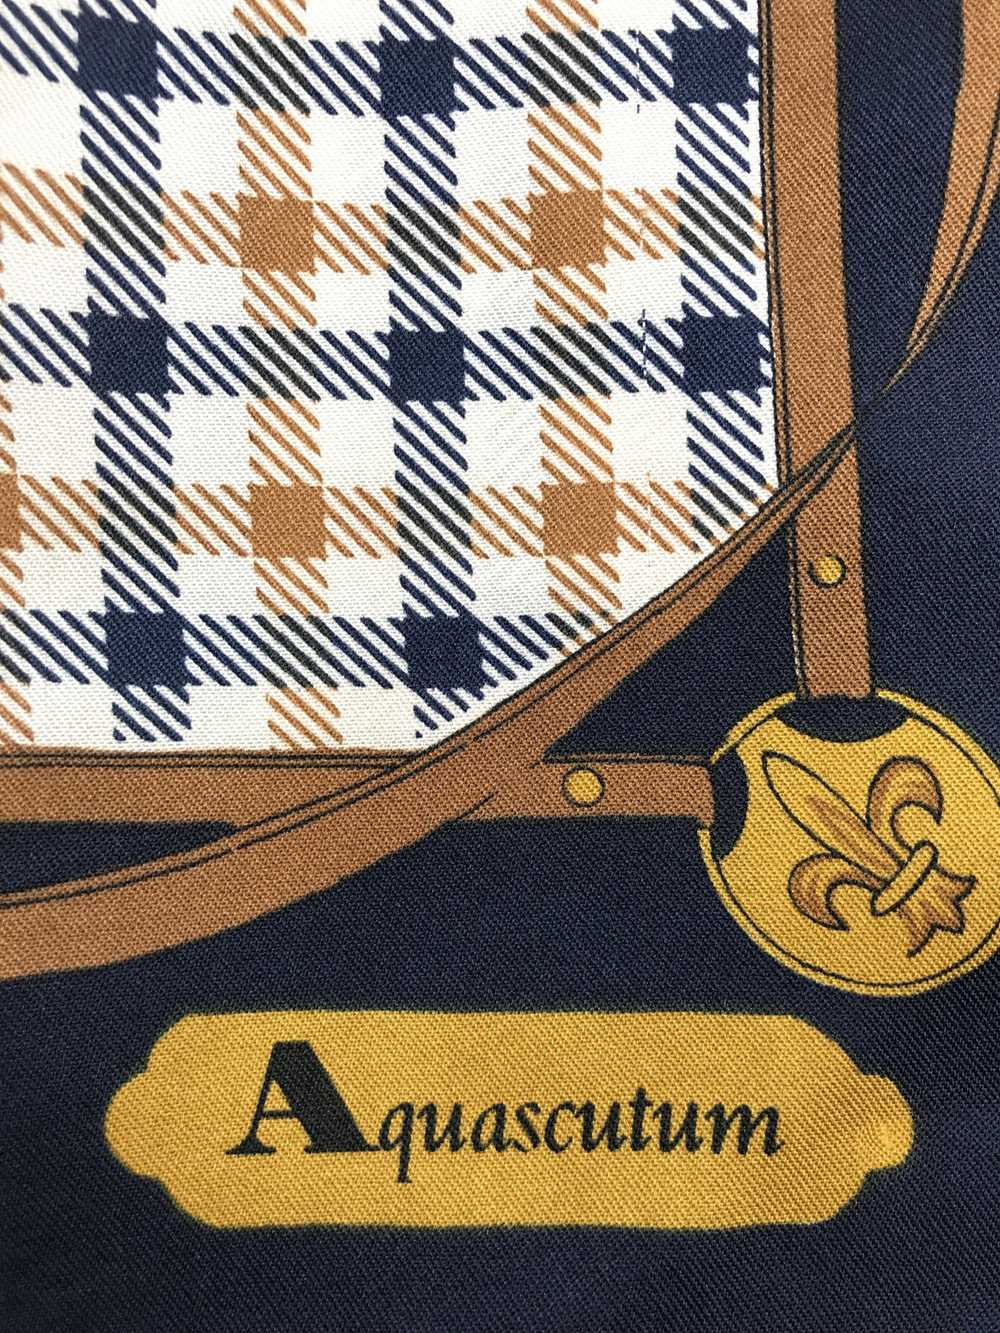 Aquascutum × Designer × Vintage Vintage Aquascutu… - image 6